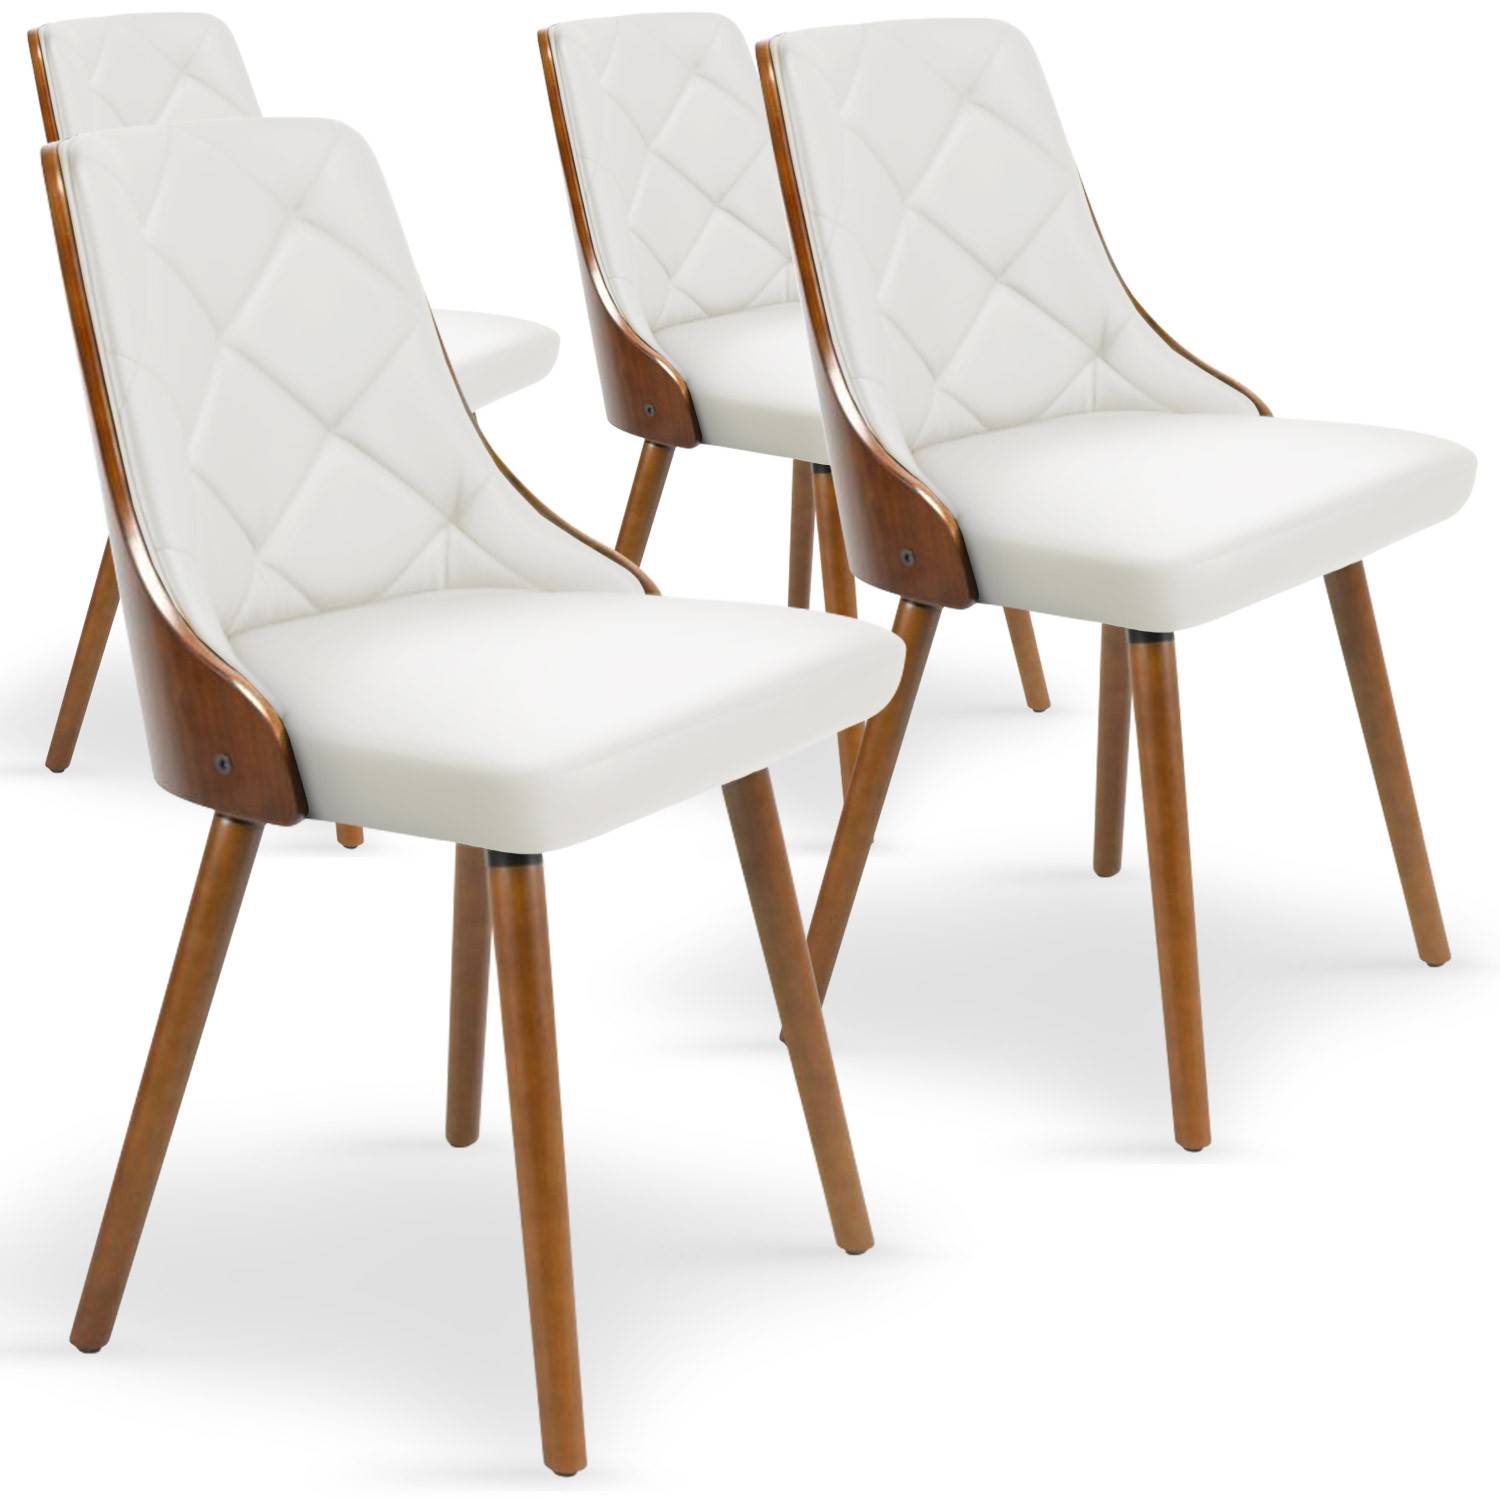 Lote de 4 sillas escandinavas Lalix de madera color avellana y blanco